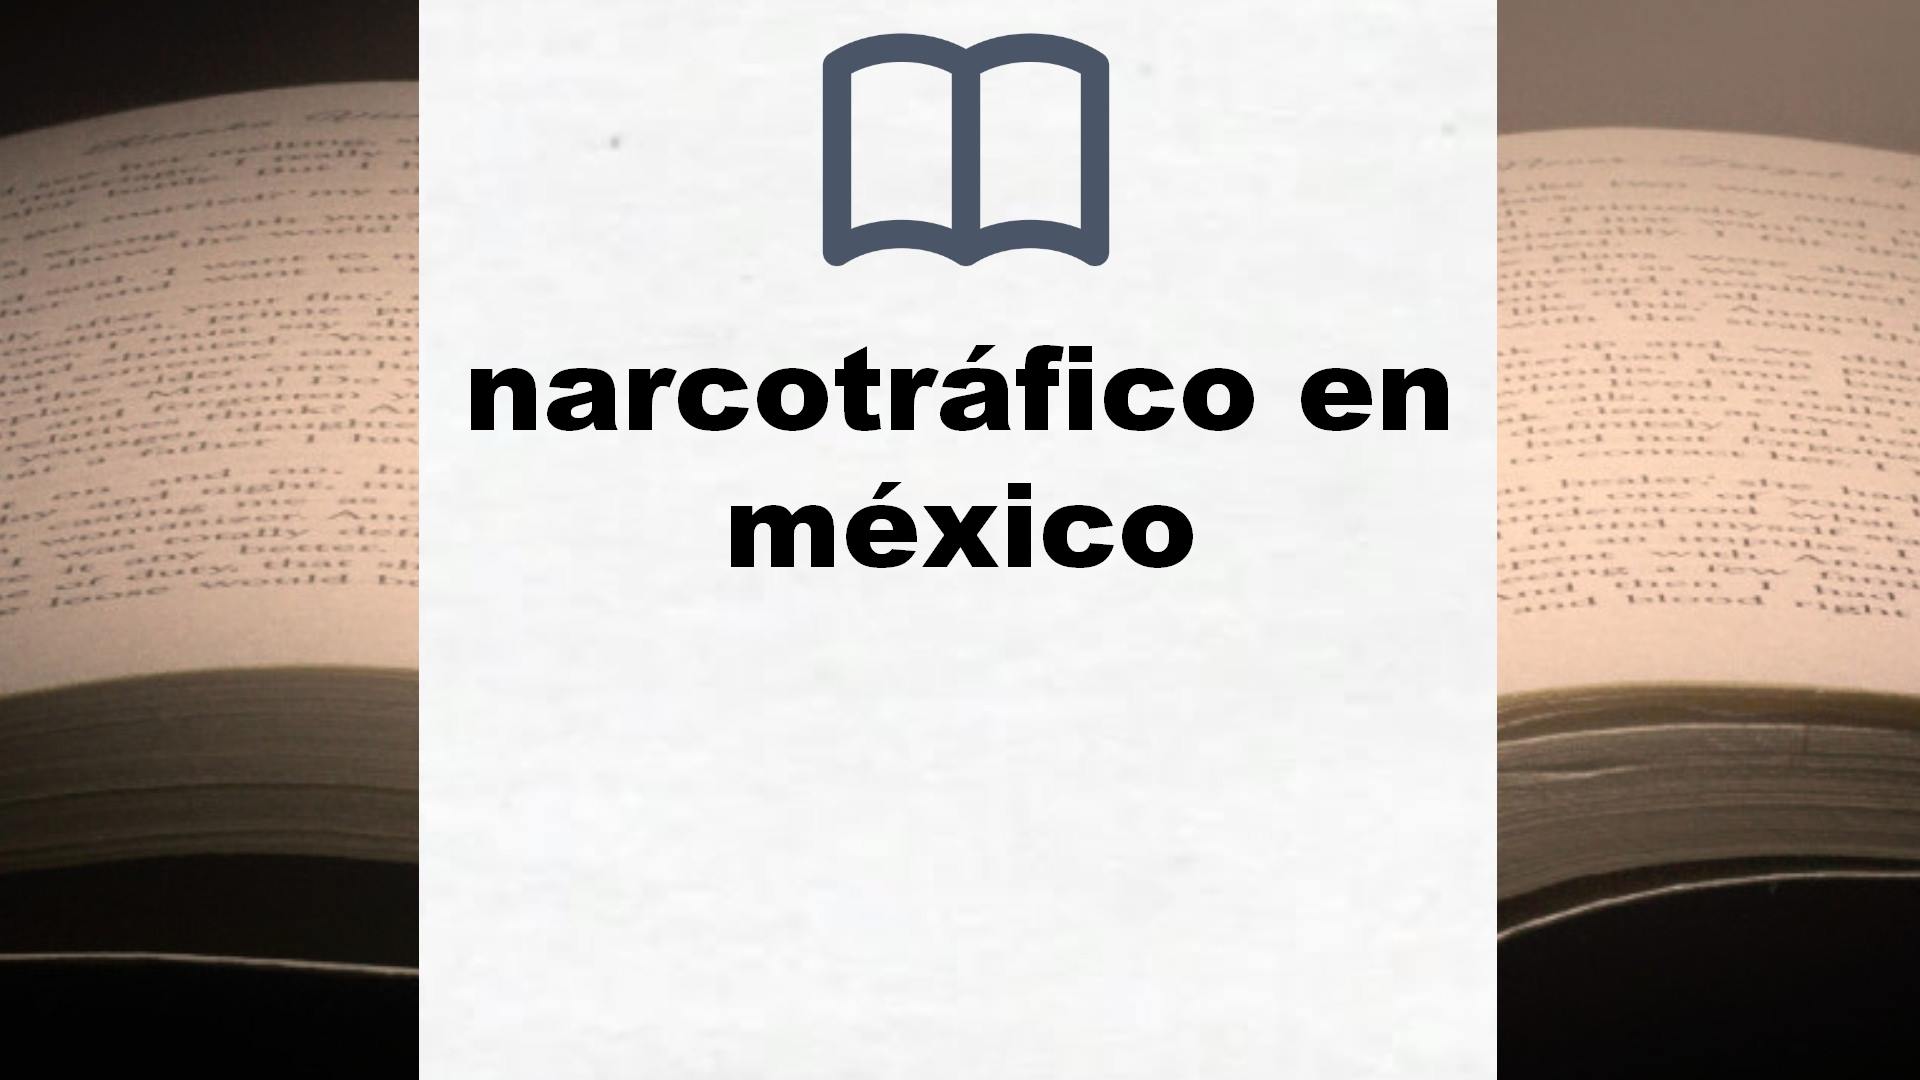 Libros sobre narcotráfico en méxico